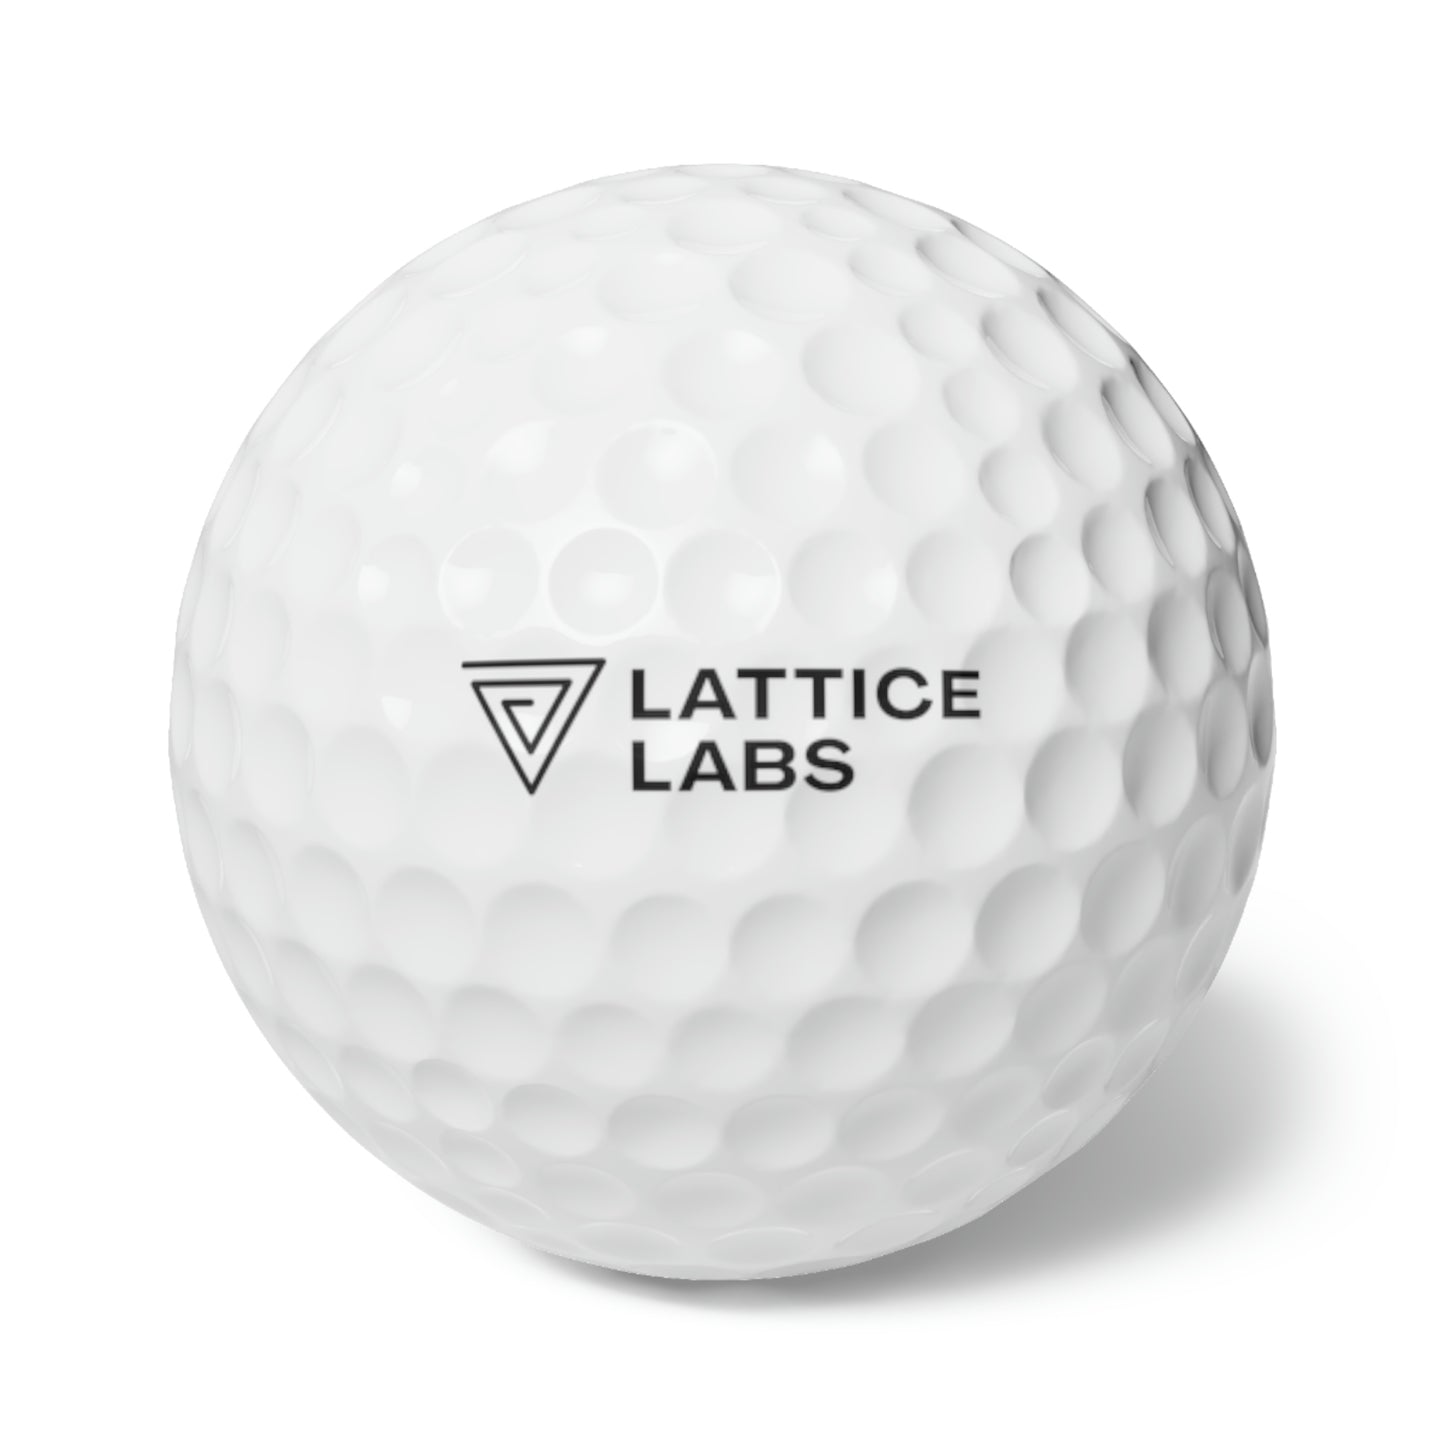 Lattice Labs Golf Balls, 6pcs